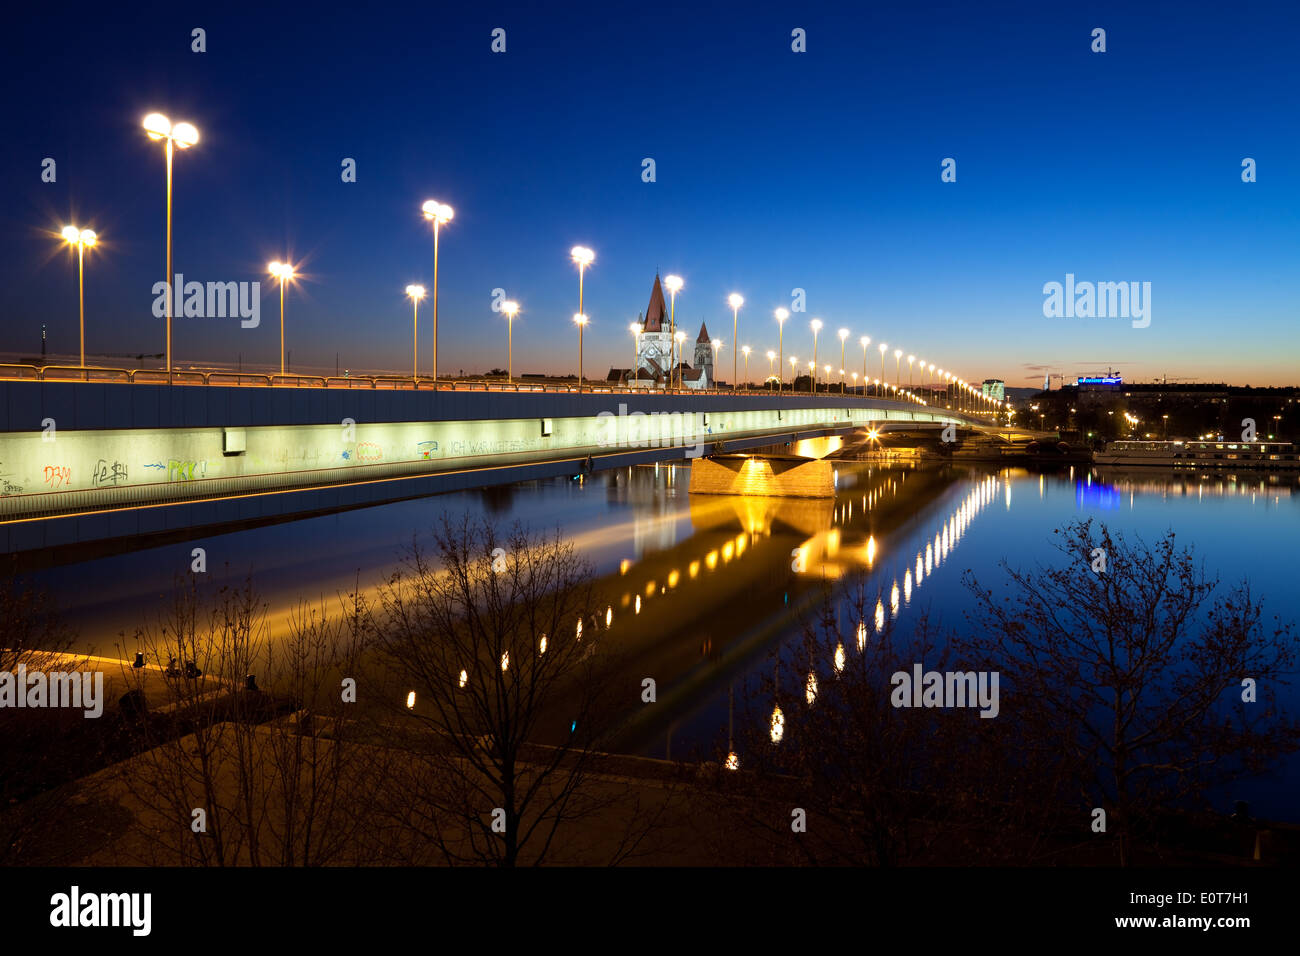 Reichsbrücke am Abend, Wien, Österreich - Reichsbrücke, Vienna, Austria Stock Photo